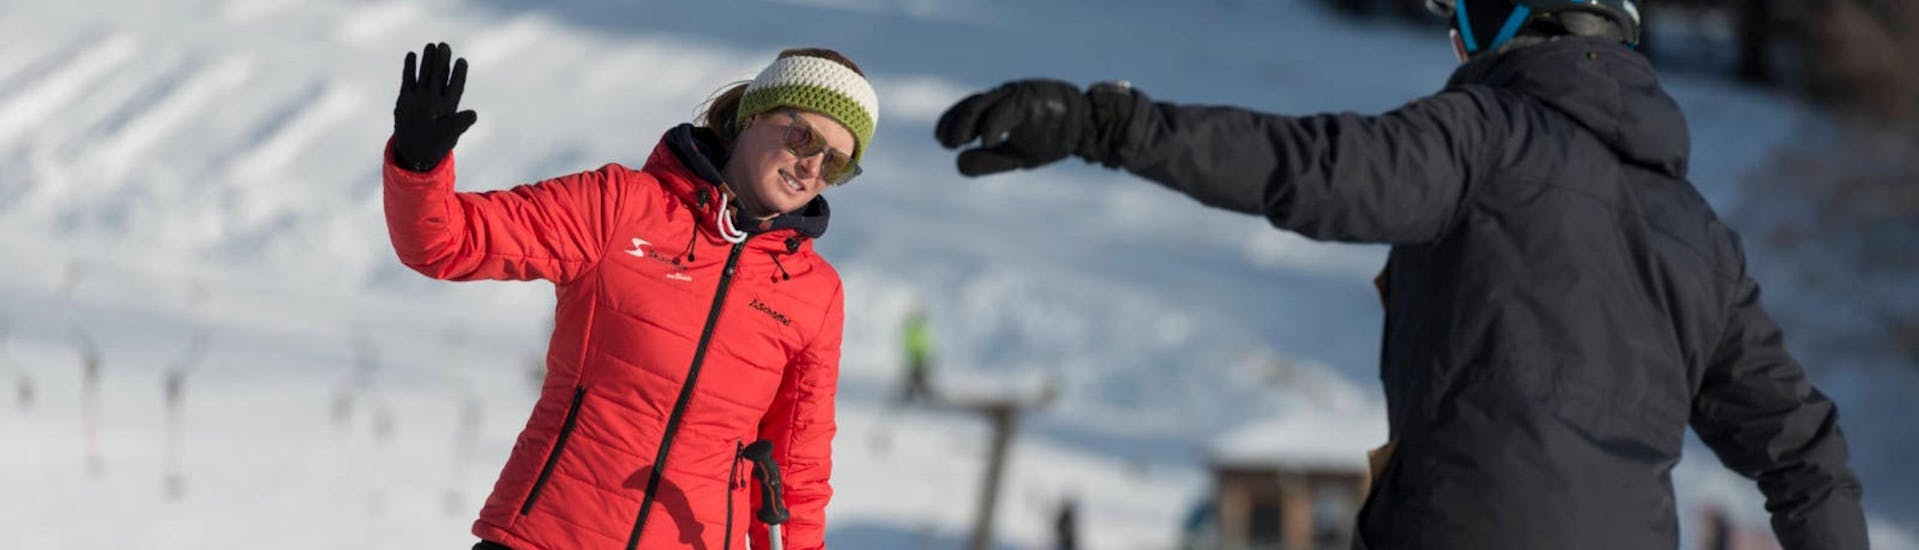 Eine Skilehrerin der Skischule Schwarzenberg am Bödele demonstriert beim privaten Skikurs für Erwachsene aller Levels die richtige Haltung auf Skiern.